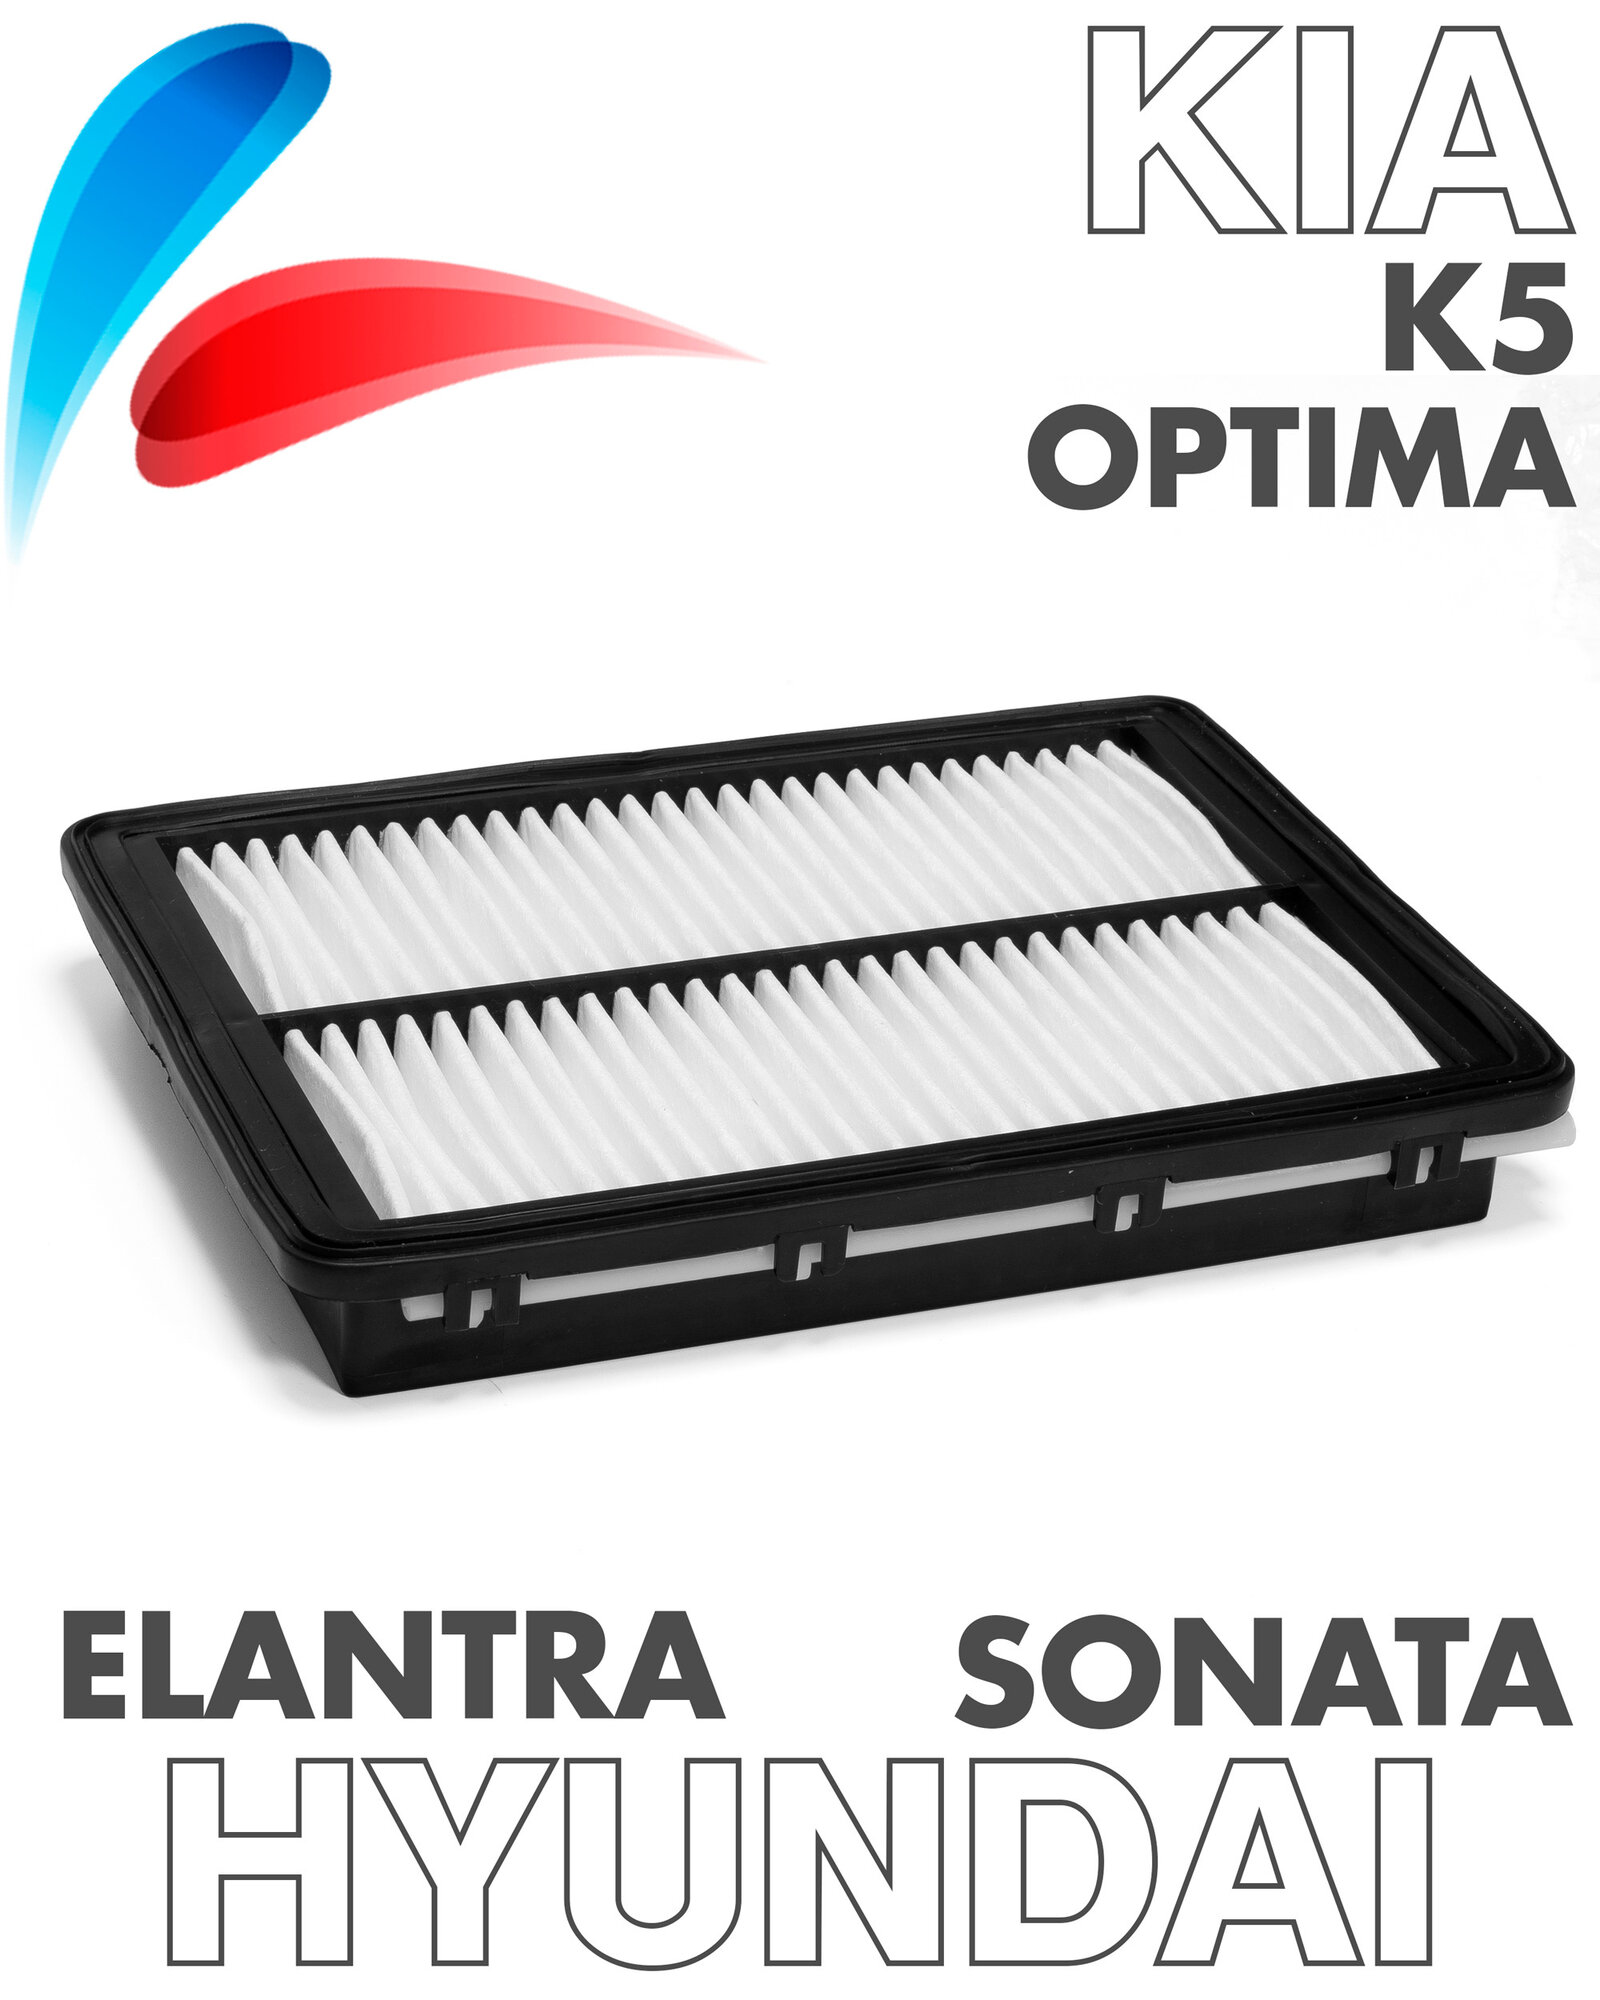 Фильтр воздушный для Хендай Соната, Киа Оптима 4, Kia Optima IV, Hyundai Sonata VII GL-9289 (OEM 28113C1100)